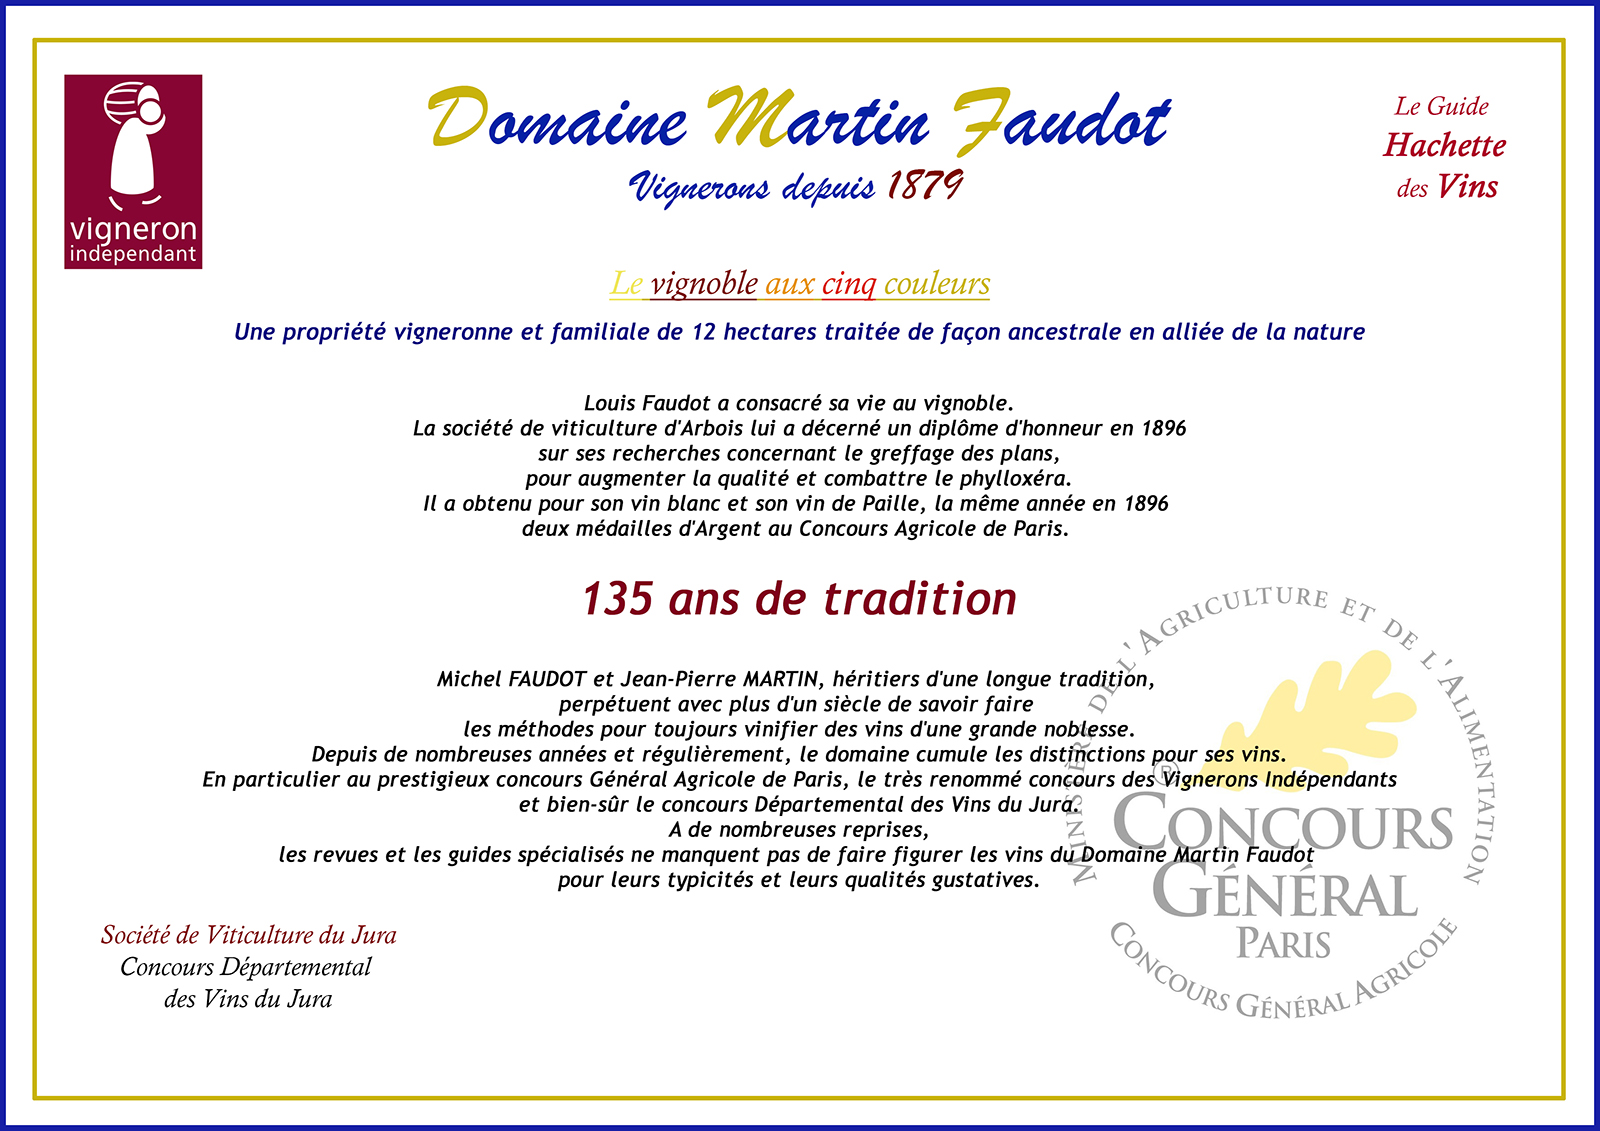 Histoire du Domaine Martin Faudot